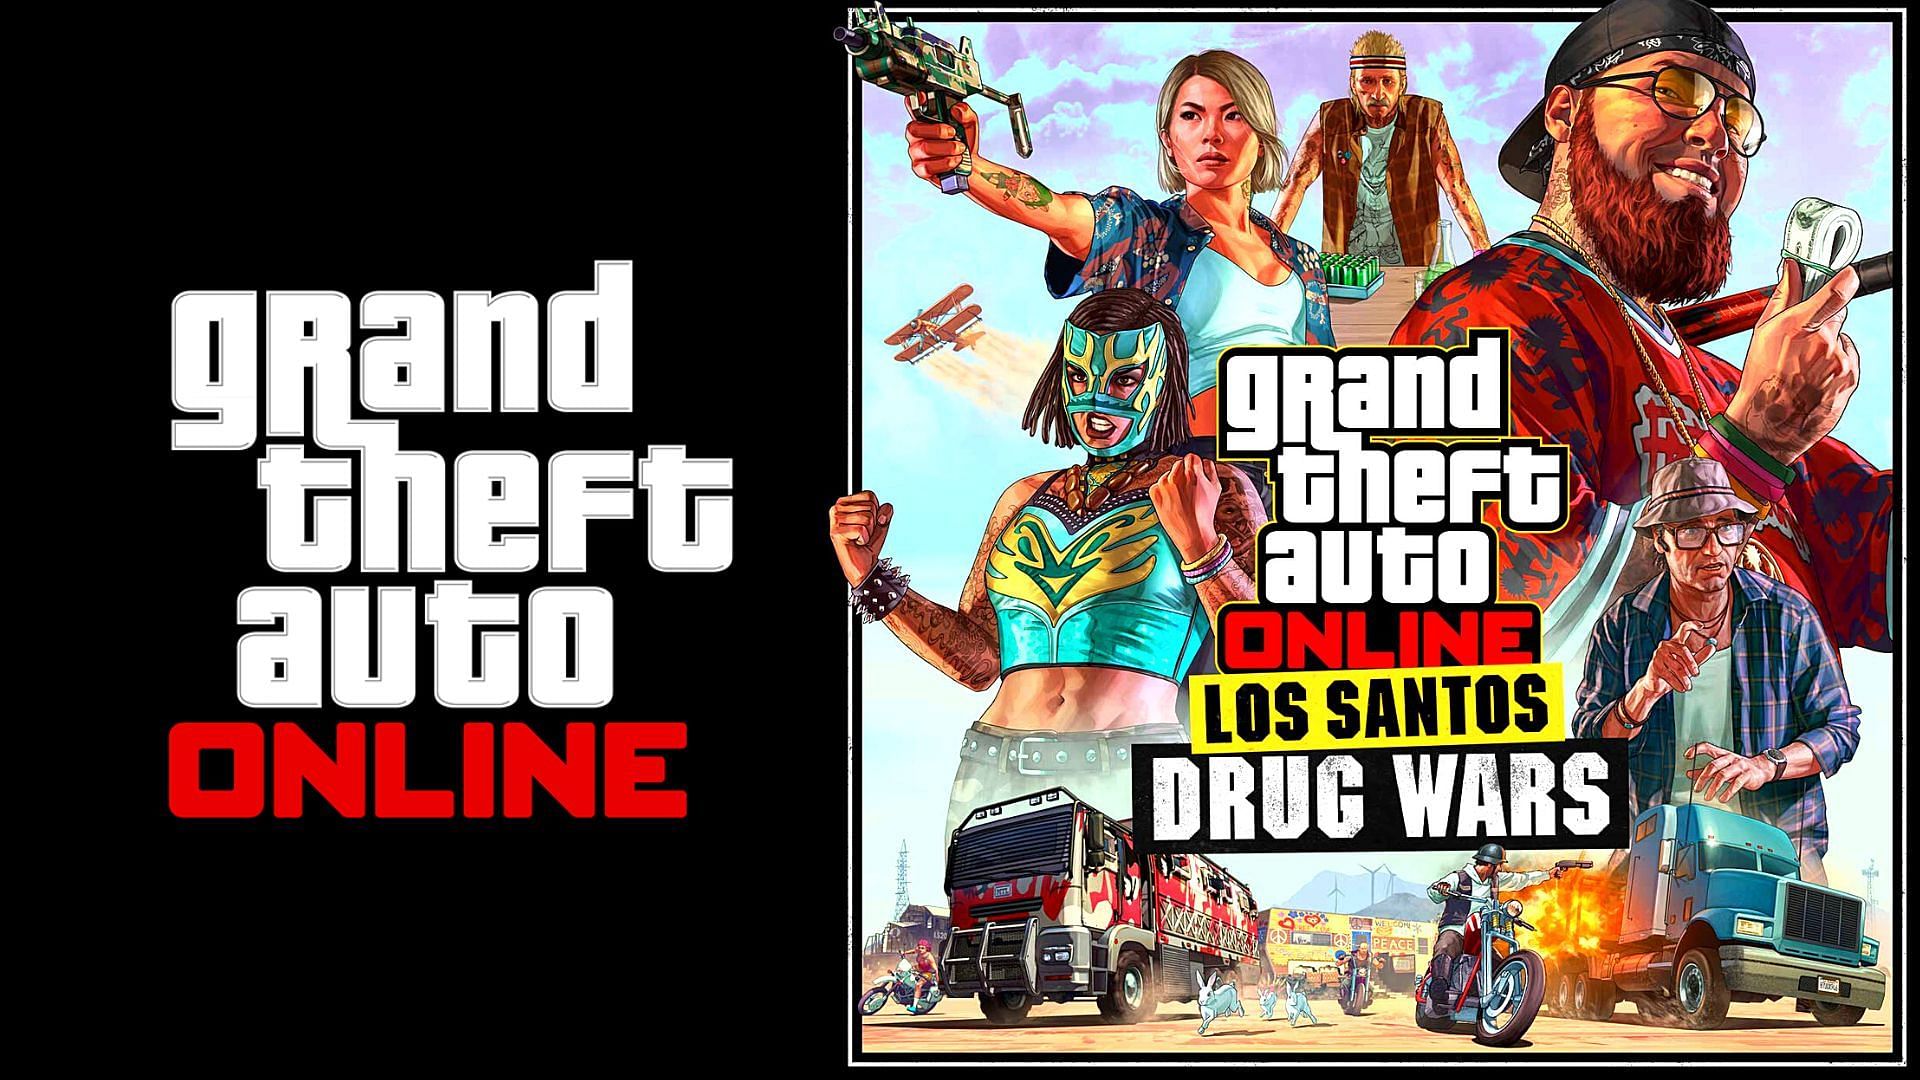 GTA Online Los Santos Drug Wars 